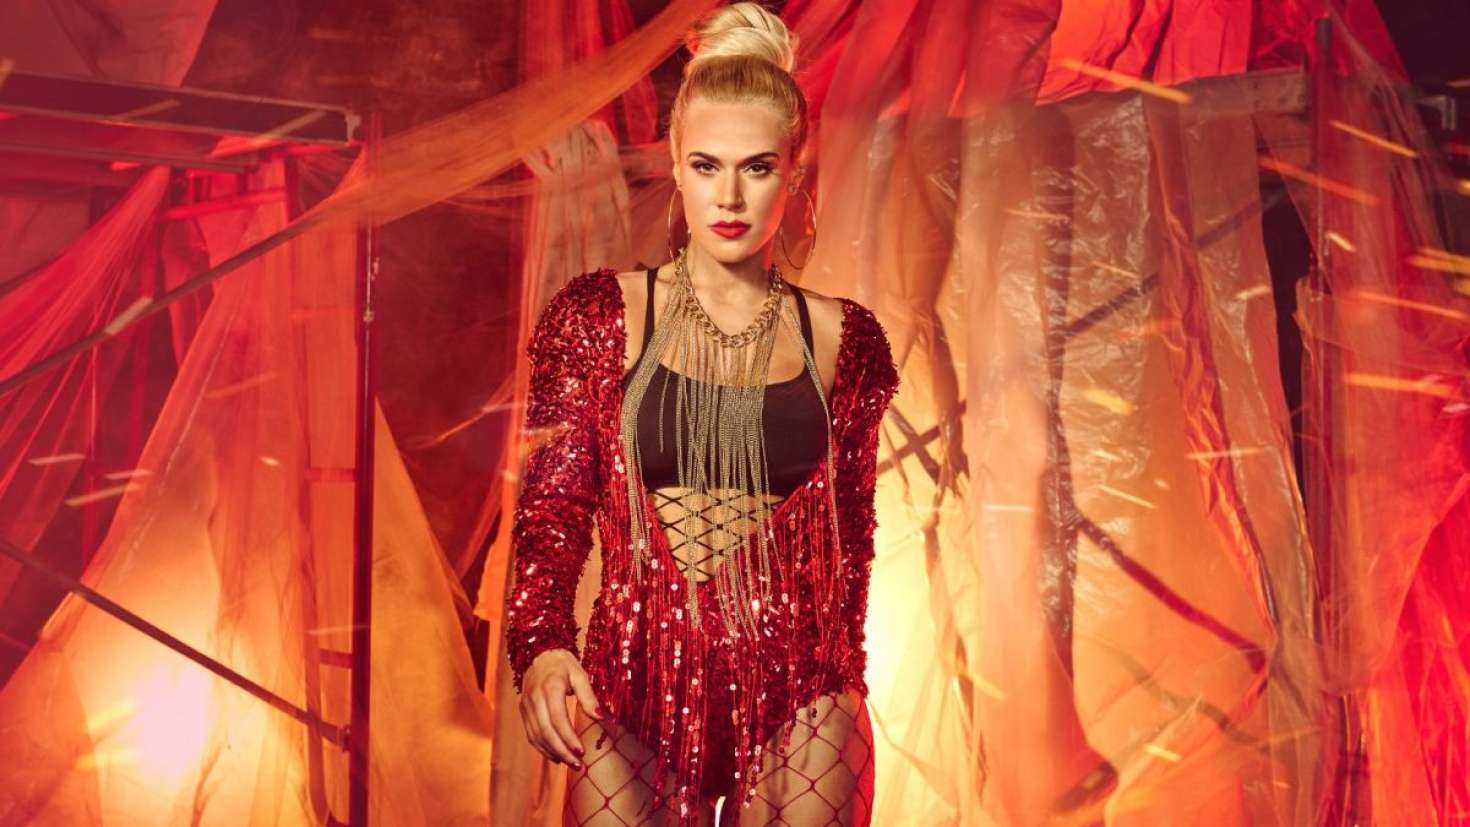 Lana WWE Halloween Photoshoot 2017 Wallpapers